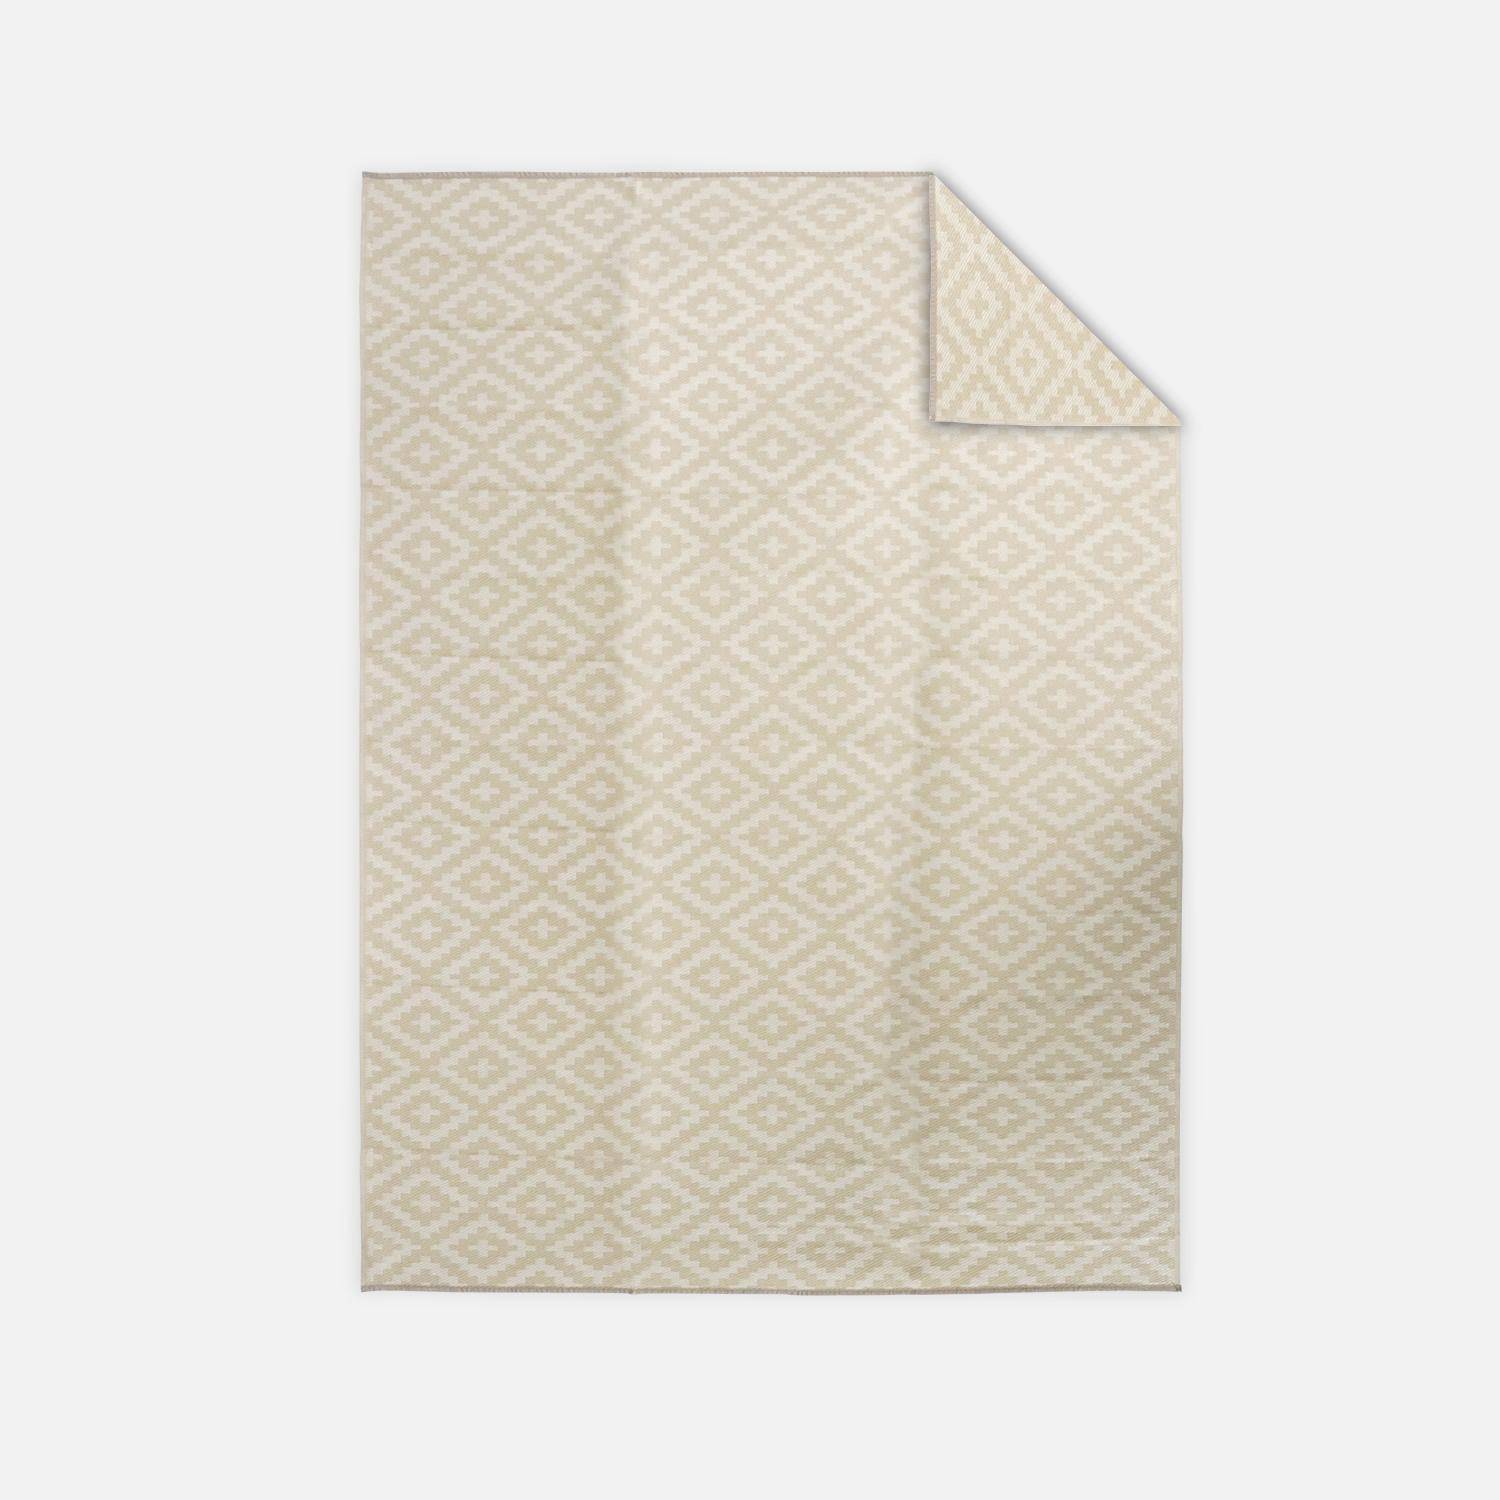 Tapis d’extérieur 270x360cm STOCKHOLM - Rectangulaire, motif losanges bleu / beige, jacquard, réversible, indoor / outdoor, Photo1